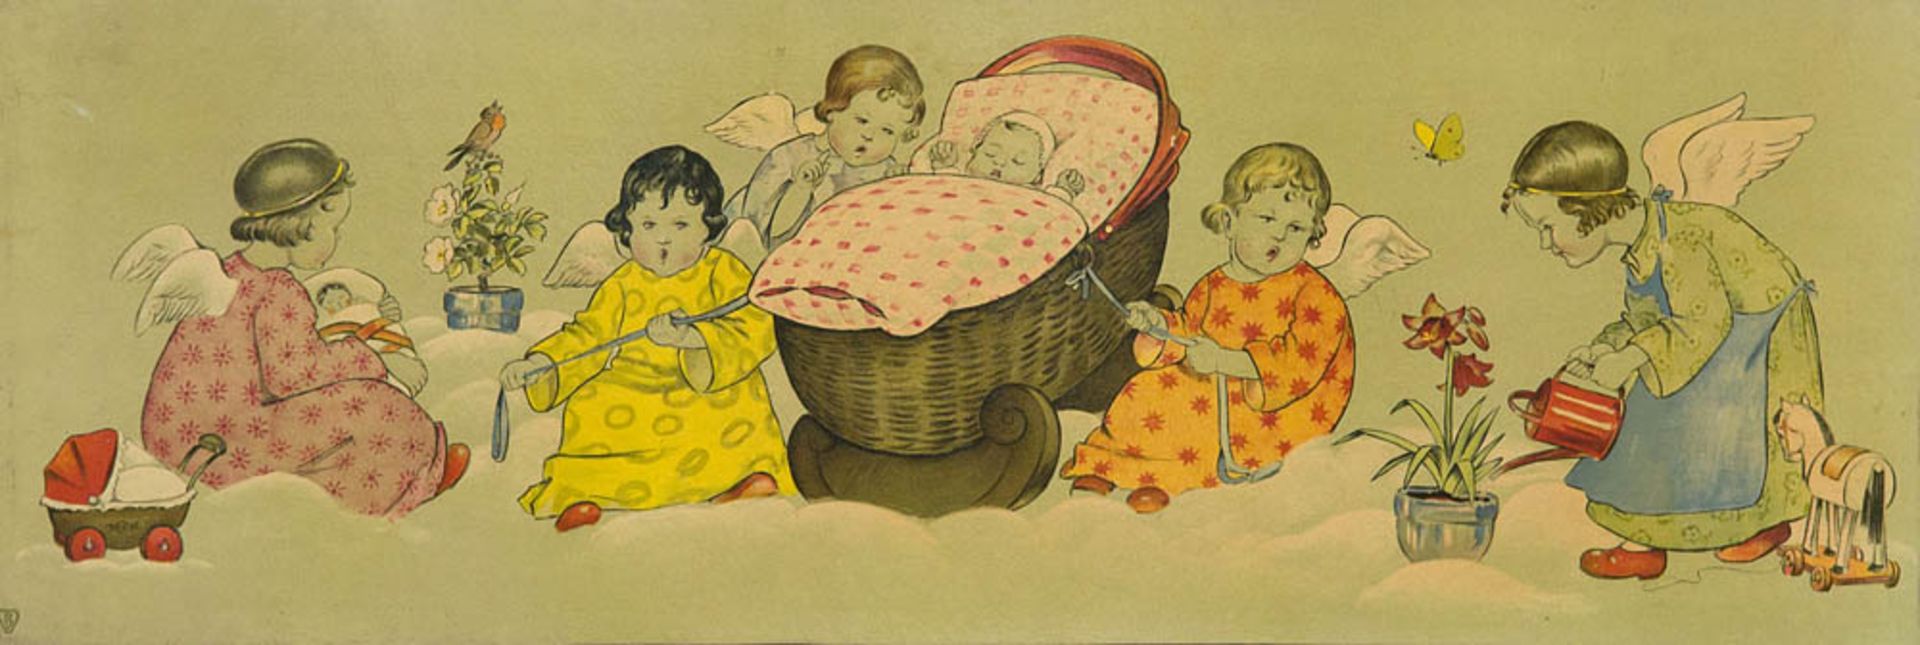 Lang, Hans. Sammlung von 4 Farbdrucken mit Bildern zu Märchen u. Kinderliedern. 1934/35. Format